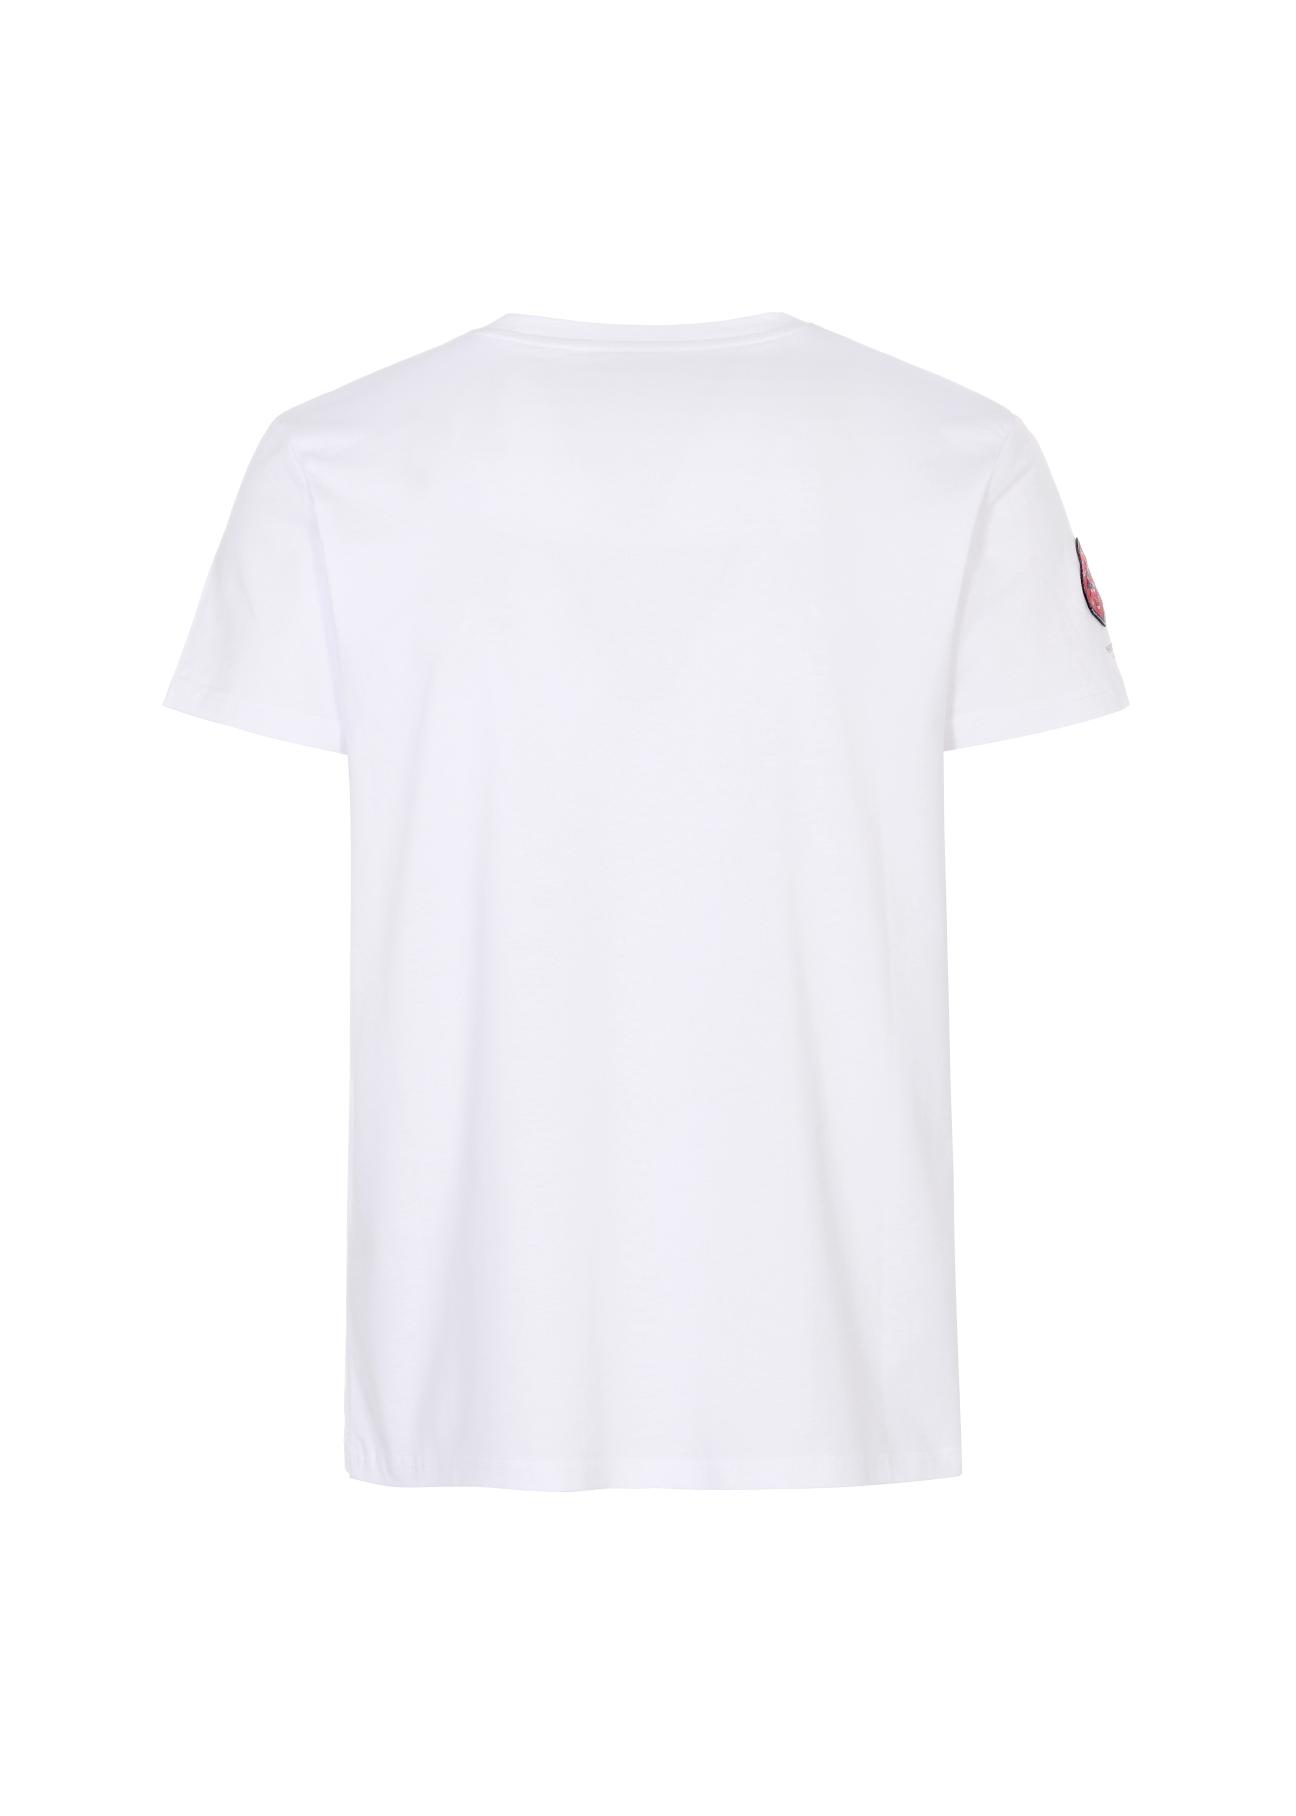 T-shirt męski TSHMT-0056-11(W21)